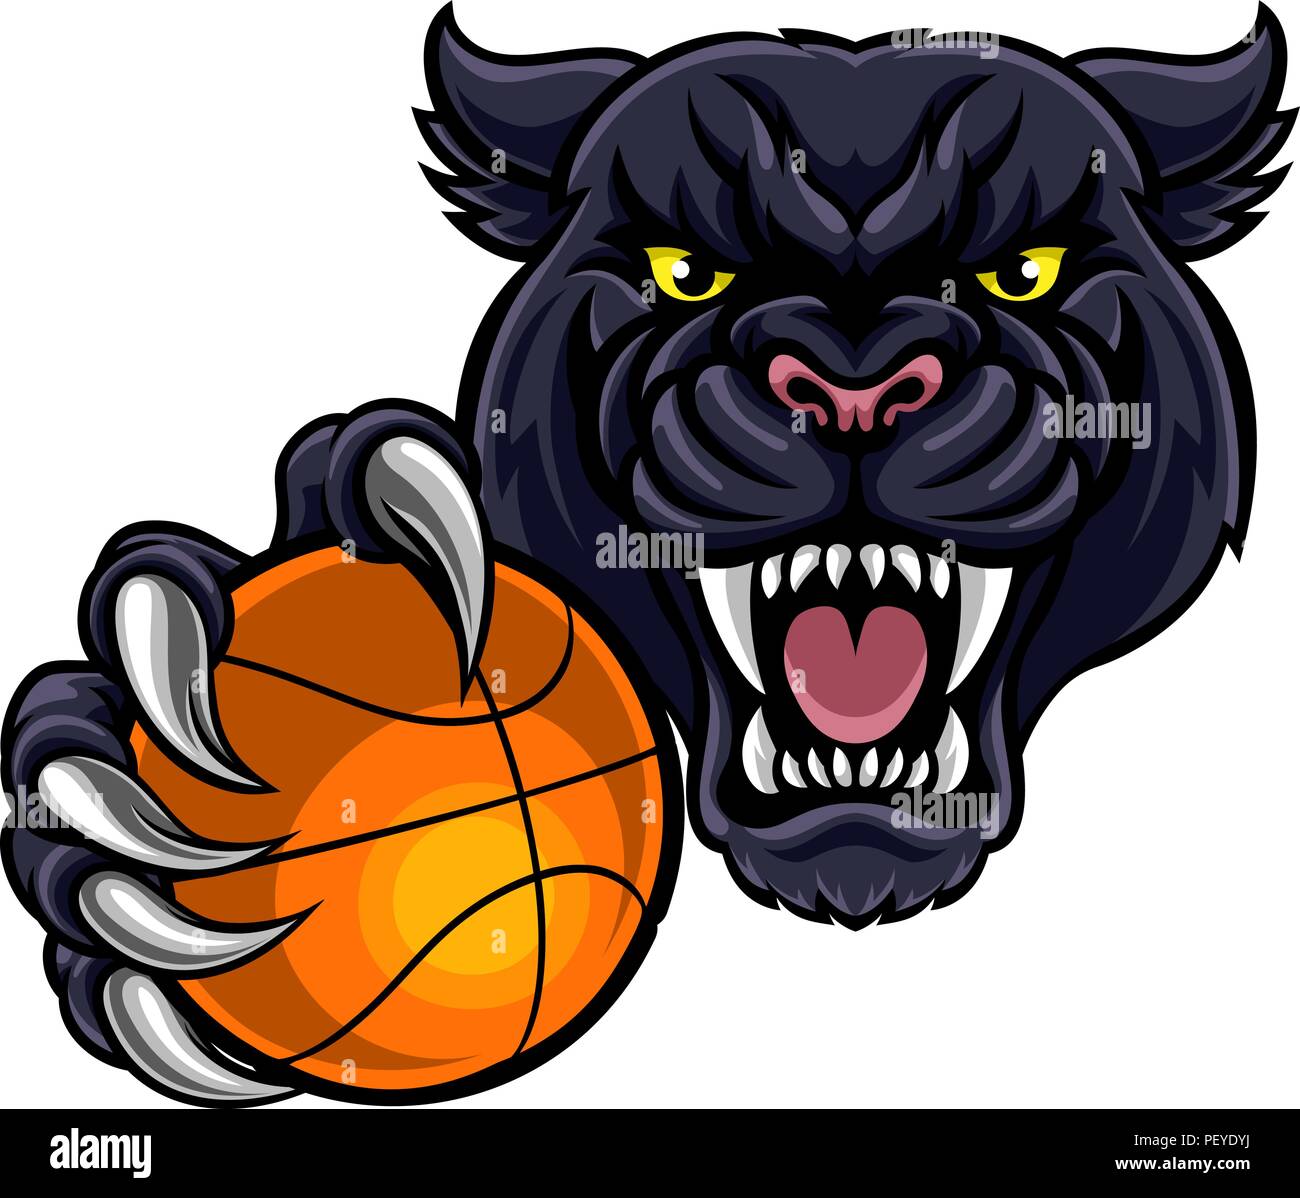 Panthère noire Holding Basket Ball Mascot Illustration de Vecteur